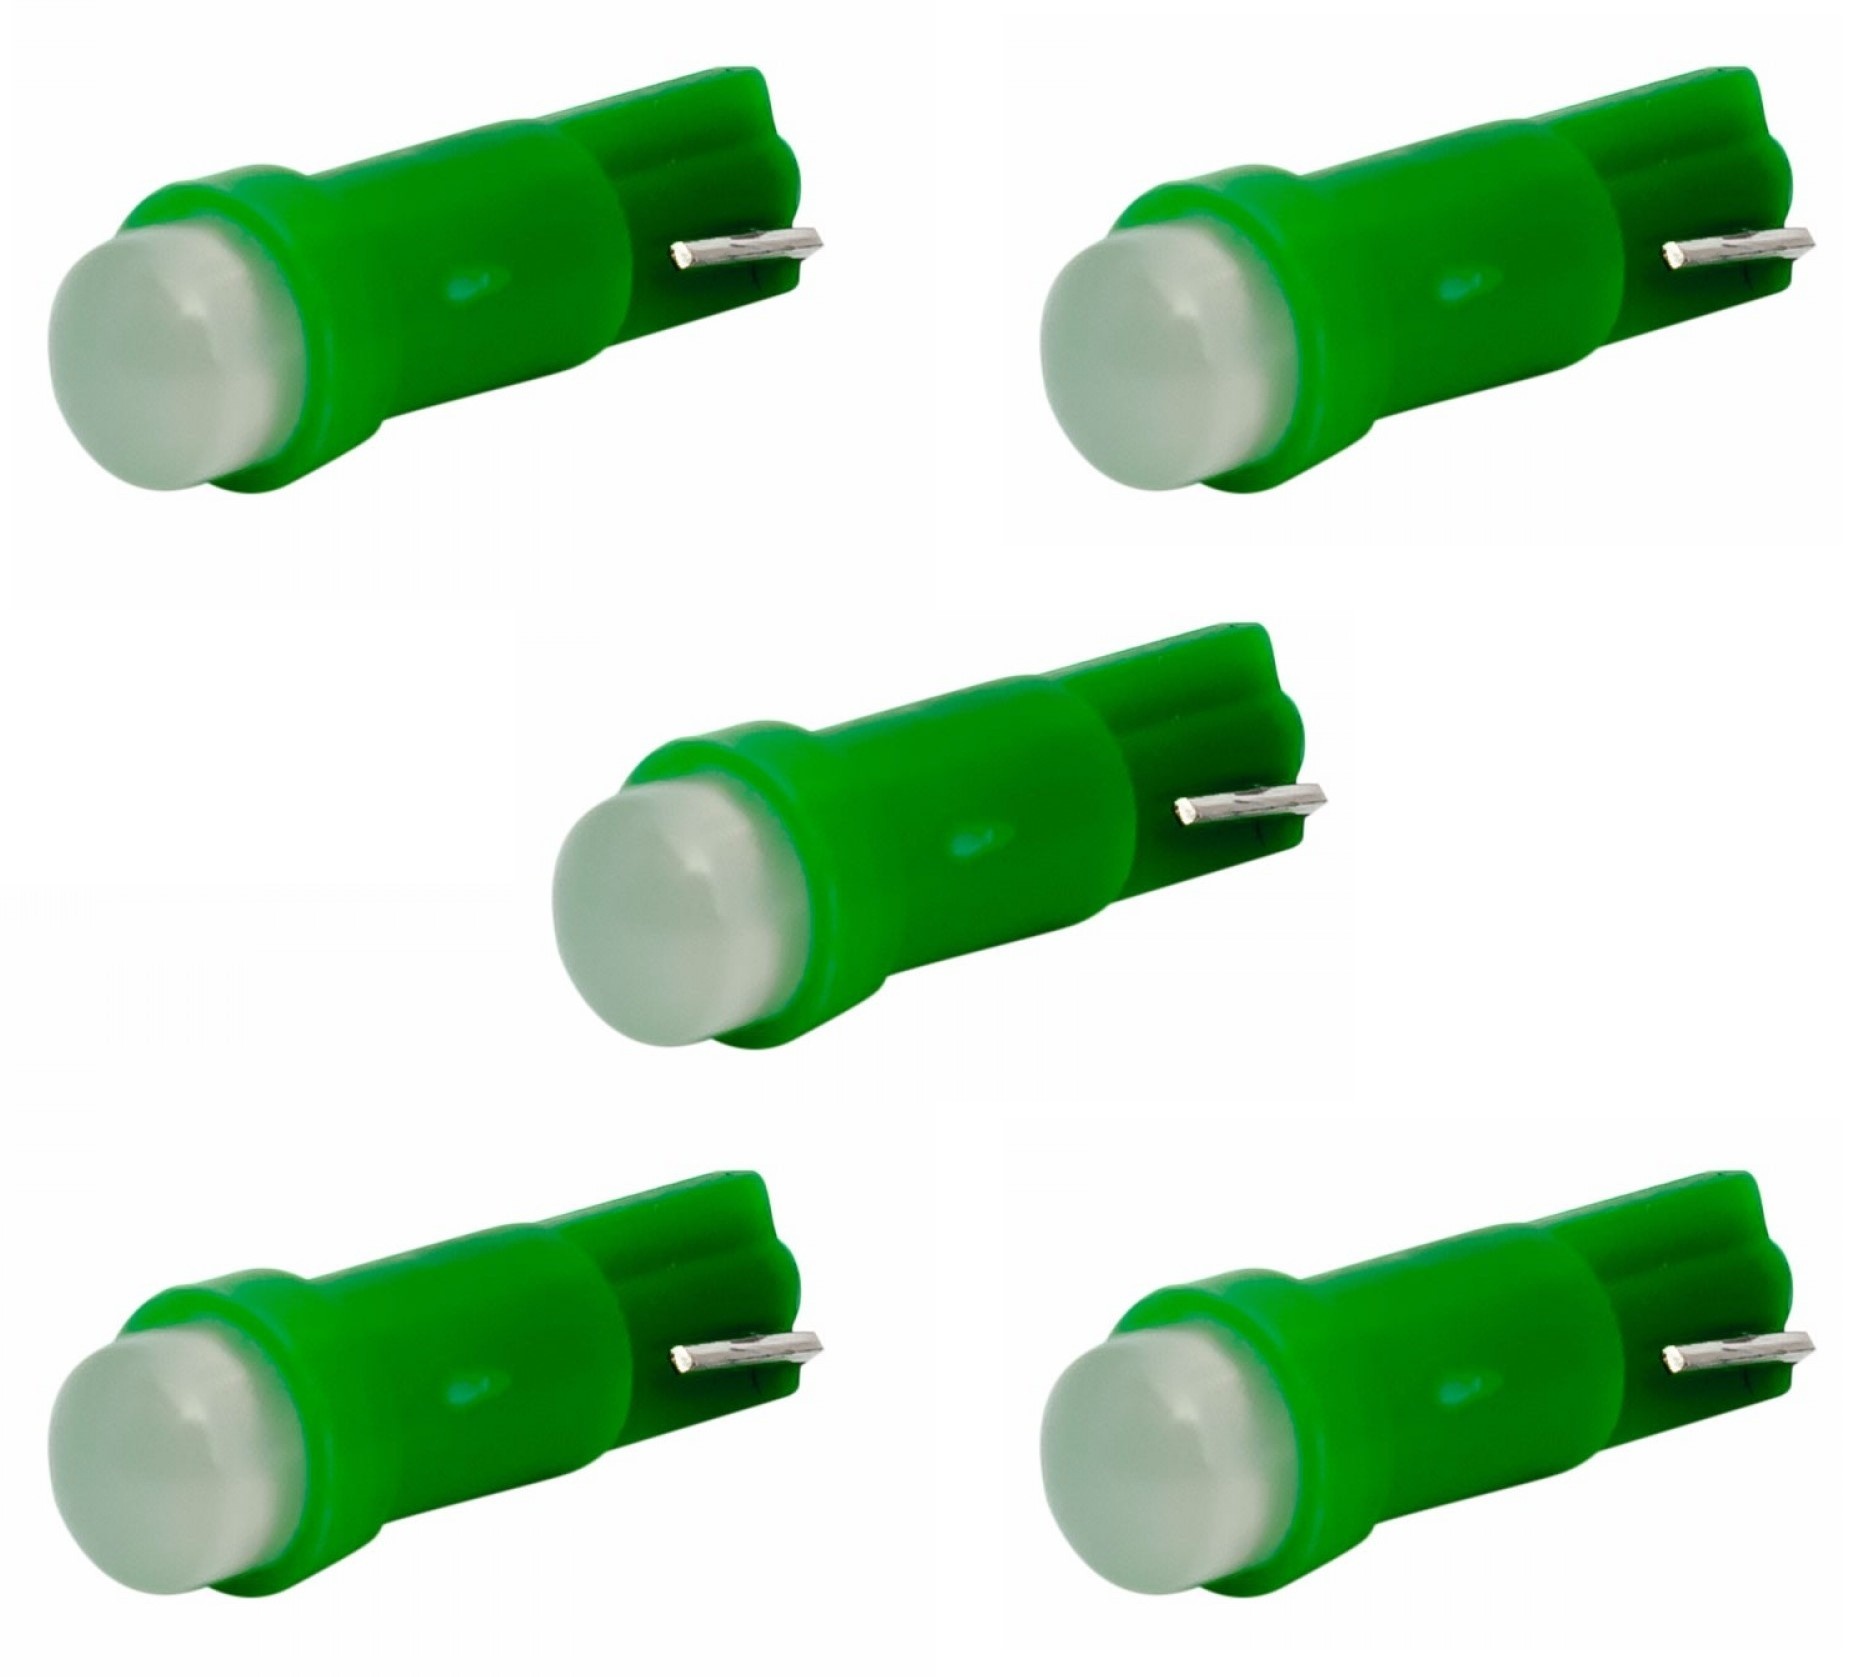 Remmen Verdorren invoegen Auto LEDlamp 5 stuks | autoverlichting LED T5 | kleur groen | 12V DC